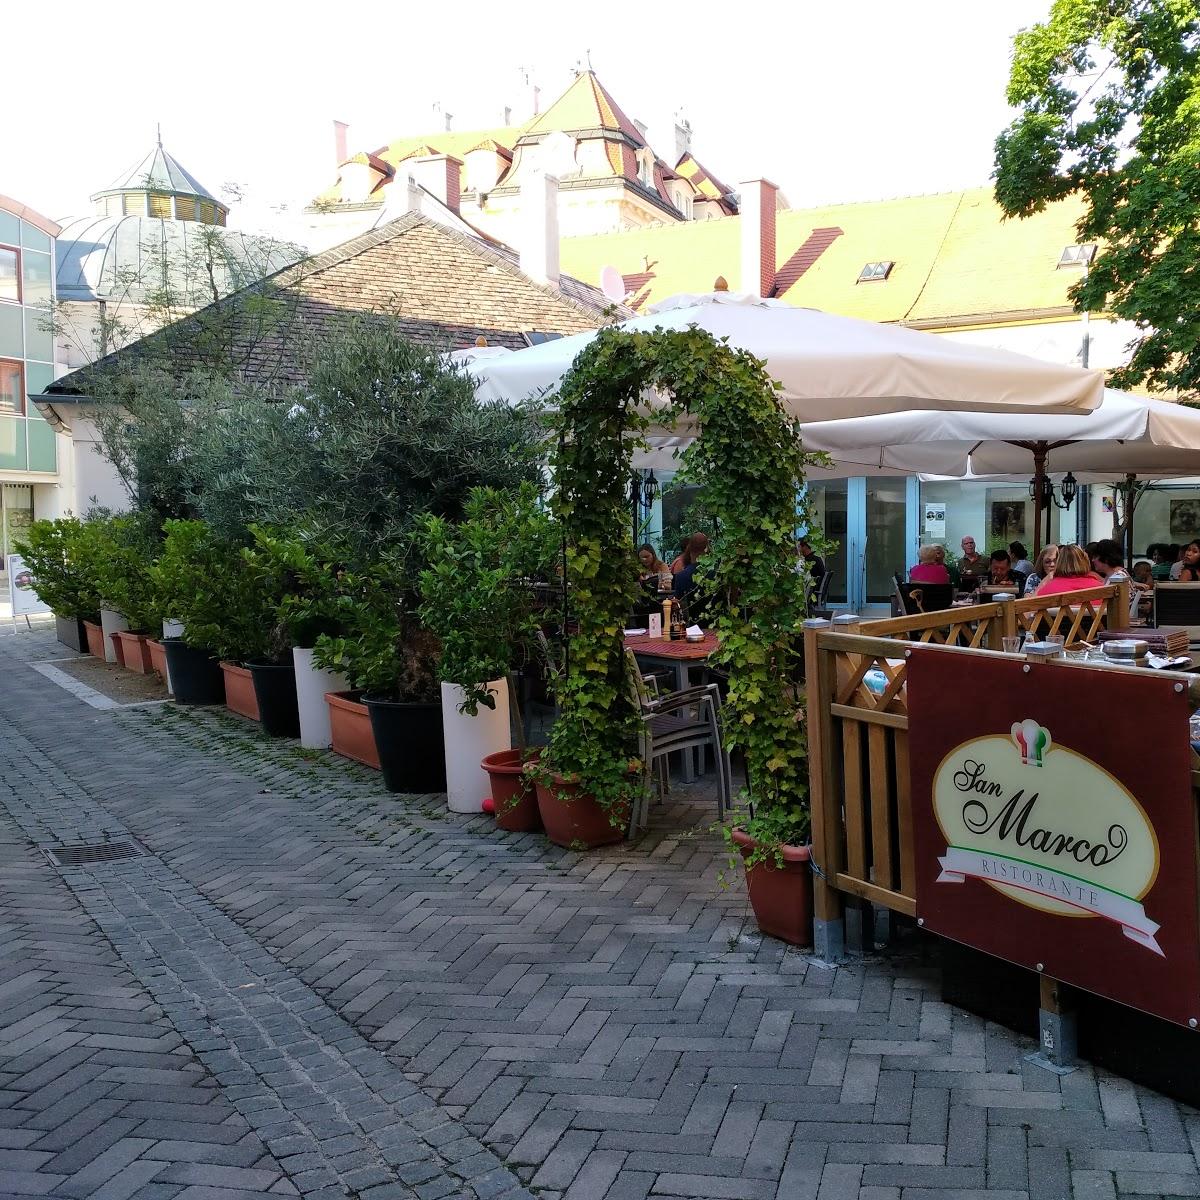 Restaurant "San Marco" in Baden